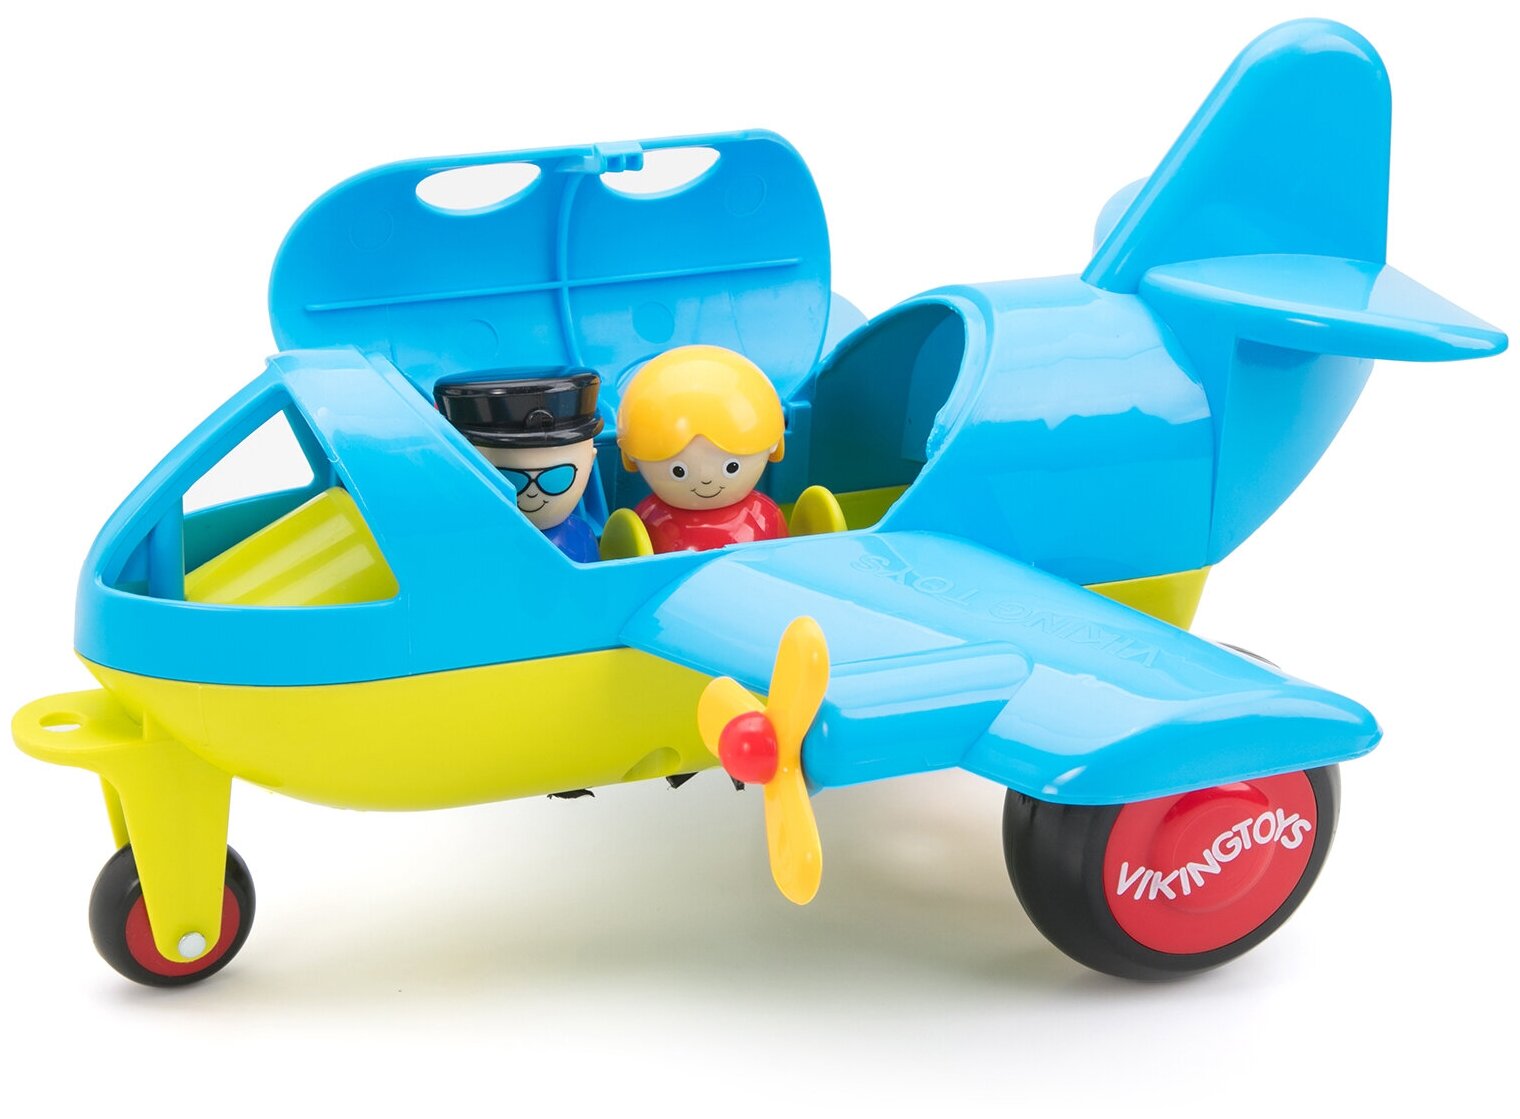 Большой винтовой самолет с фигурками Viking Toys, для детей от 1 года